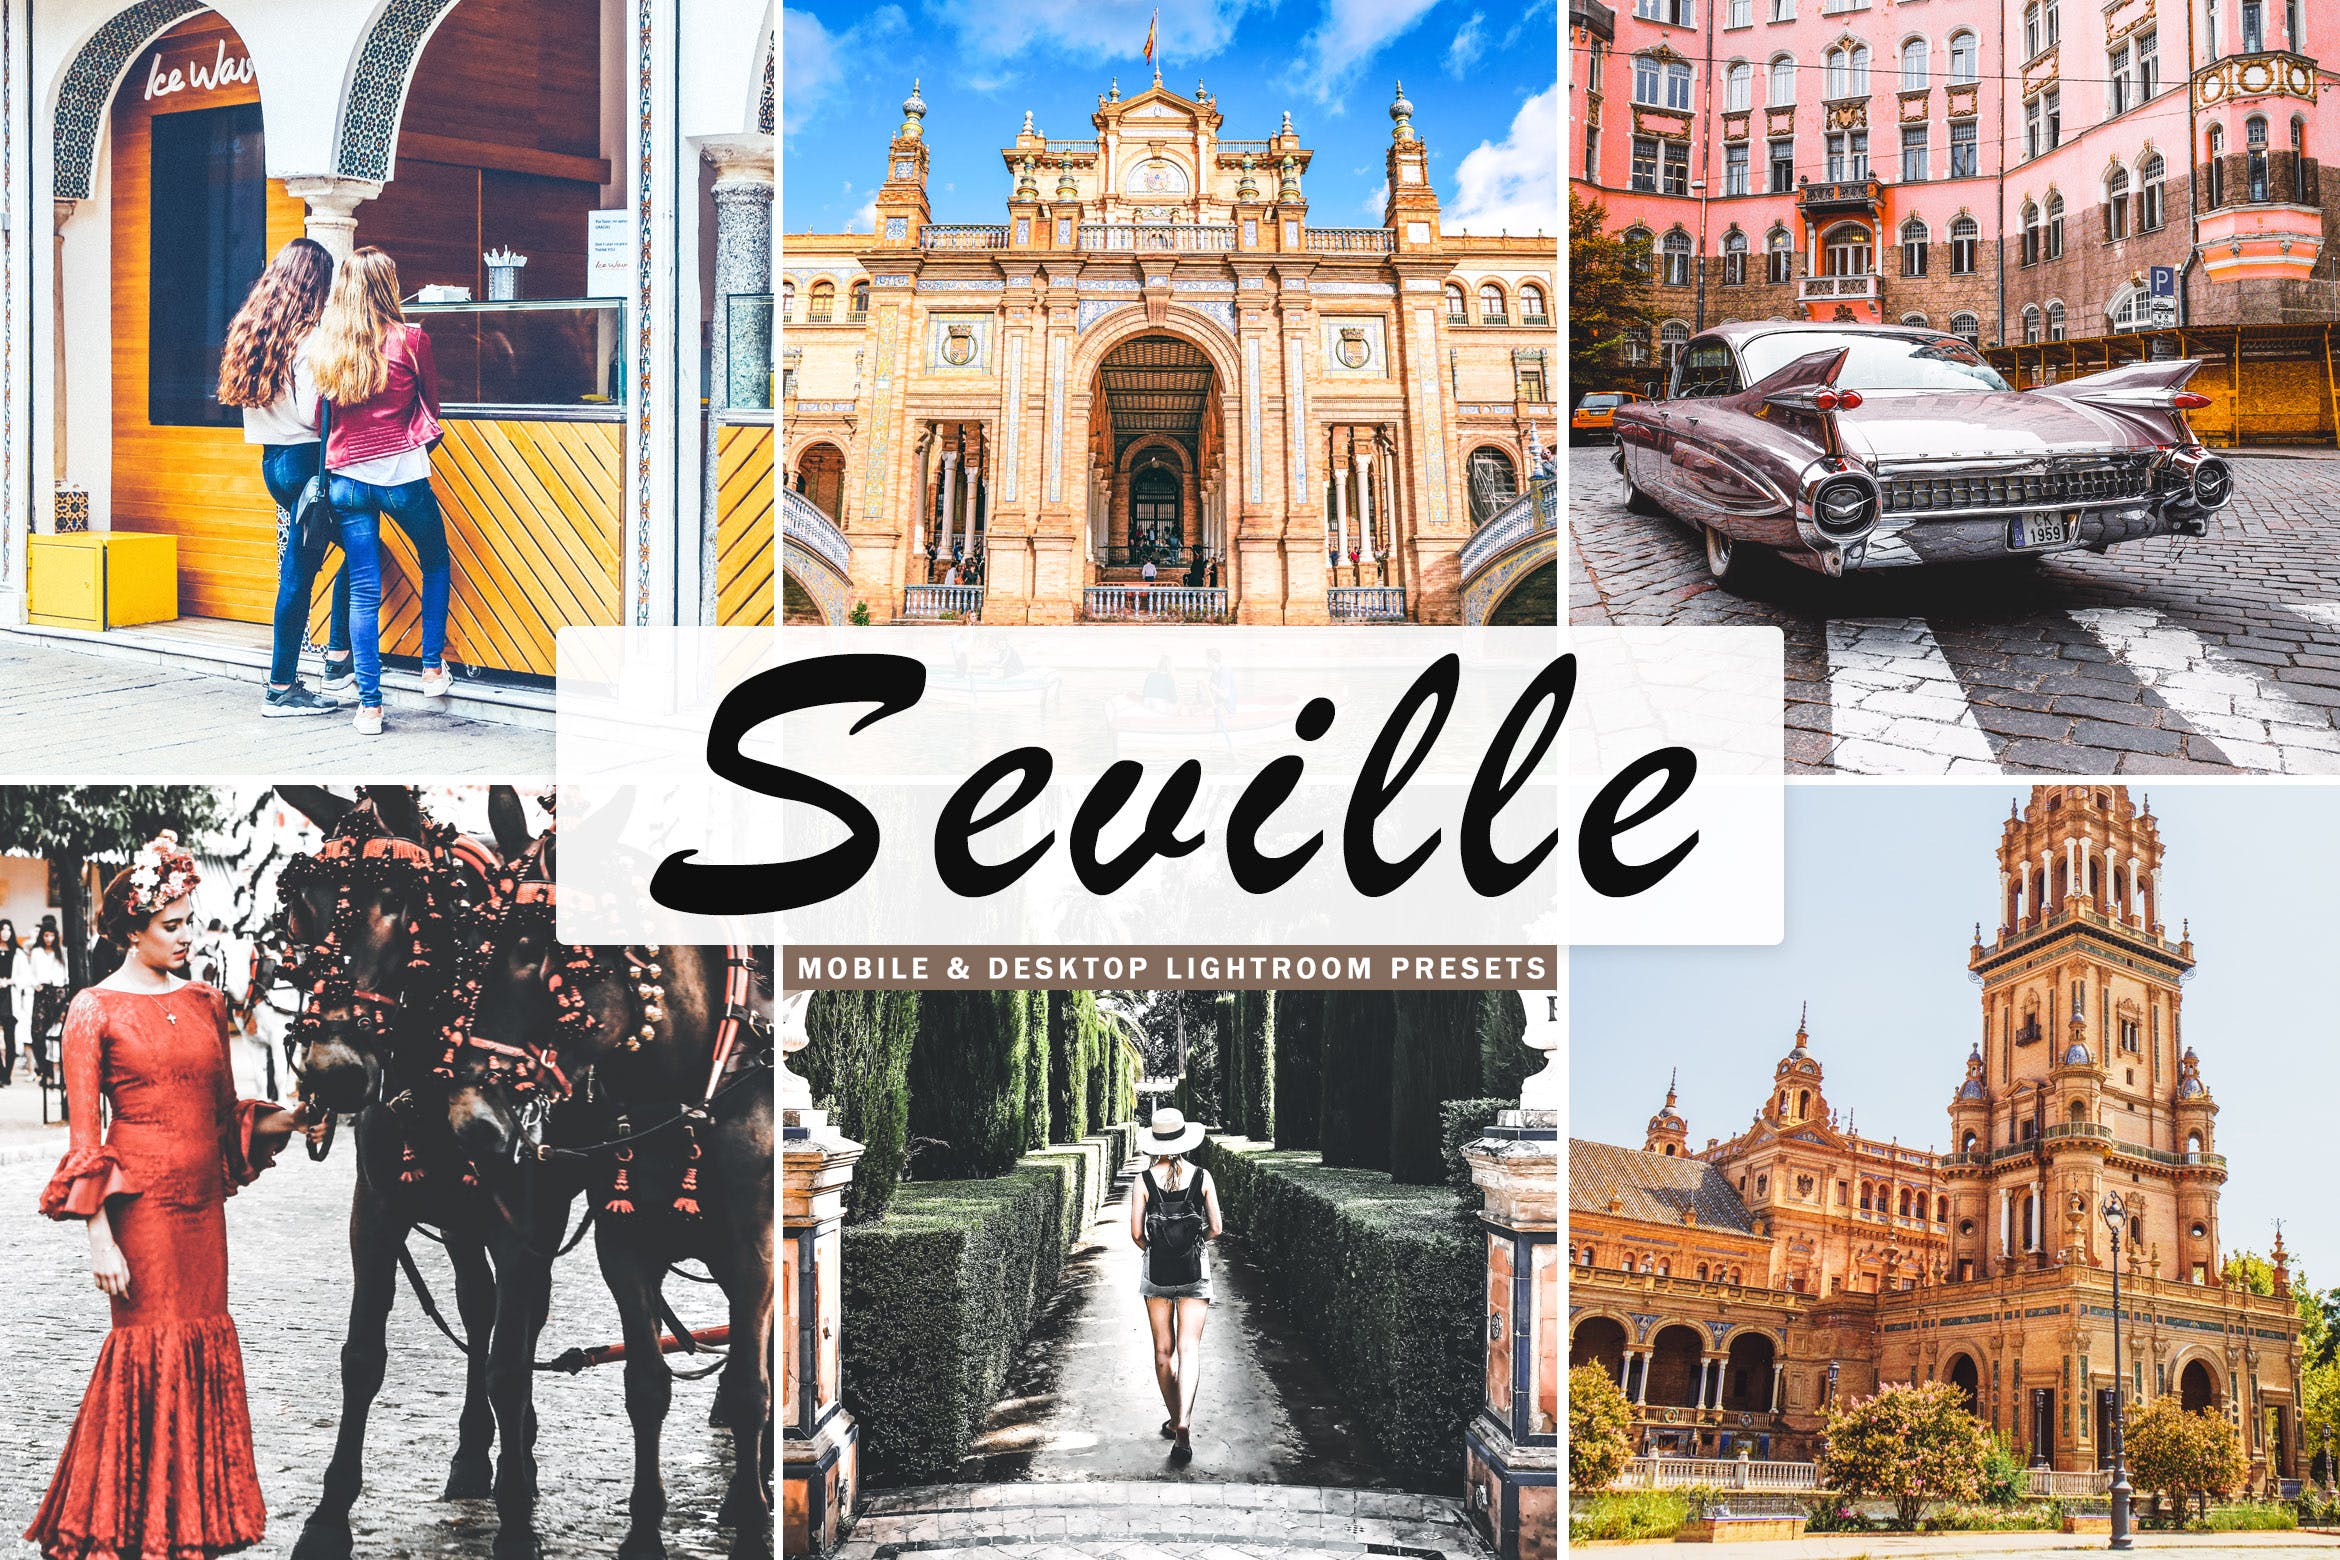 塞维利亚旅行摄影后期加工第一素材精选LR预设 Seville Mobile & Desktop Lightroom Presets插图